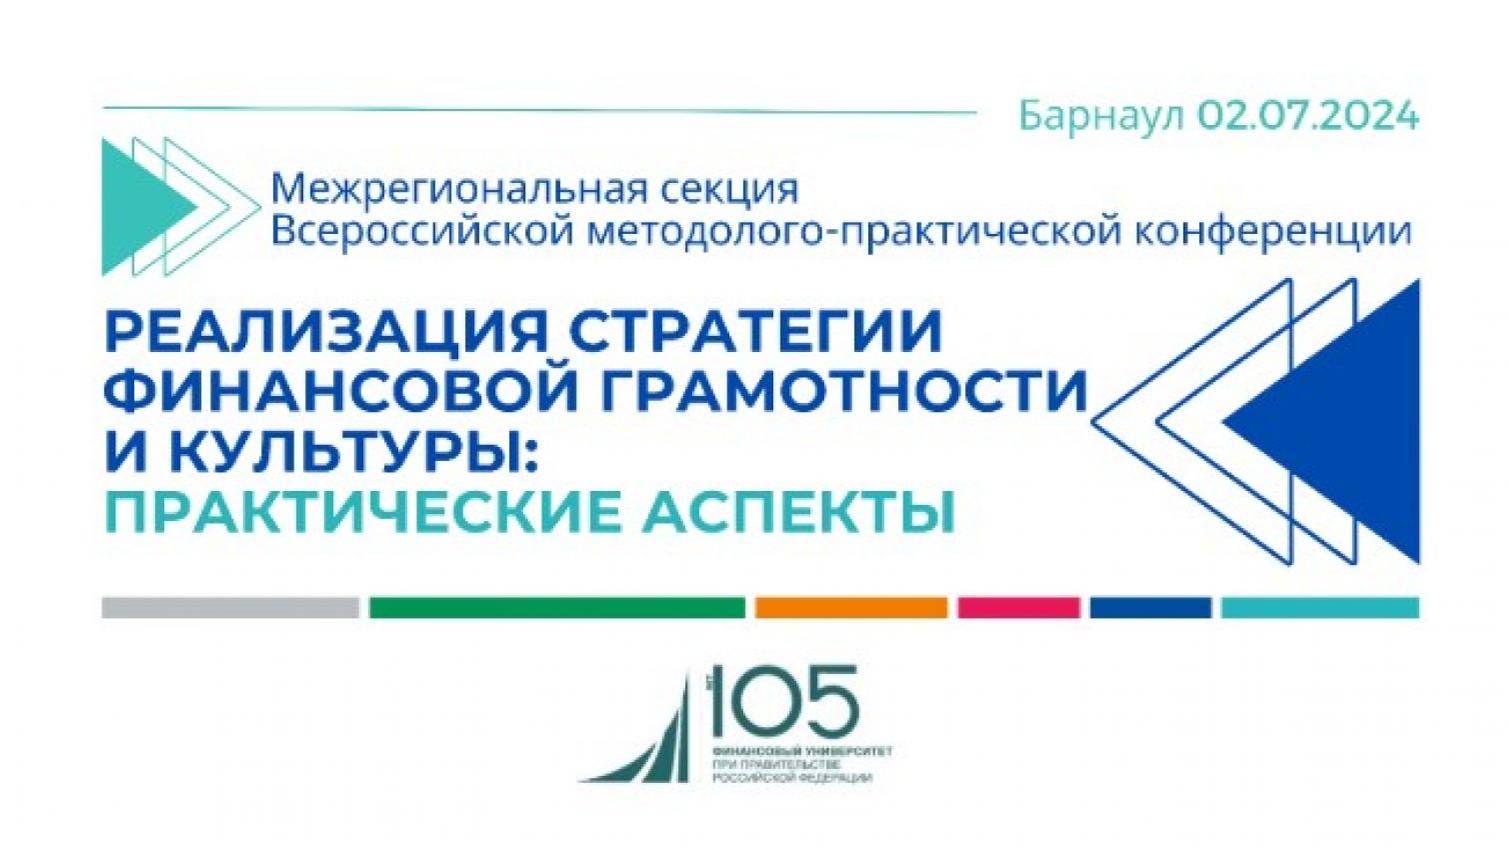 Прямая трансляция всероссийской конференции по финансовой грамотности и культуре в Барнауле